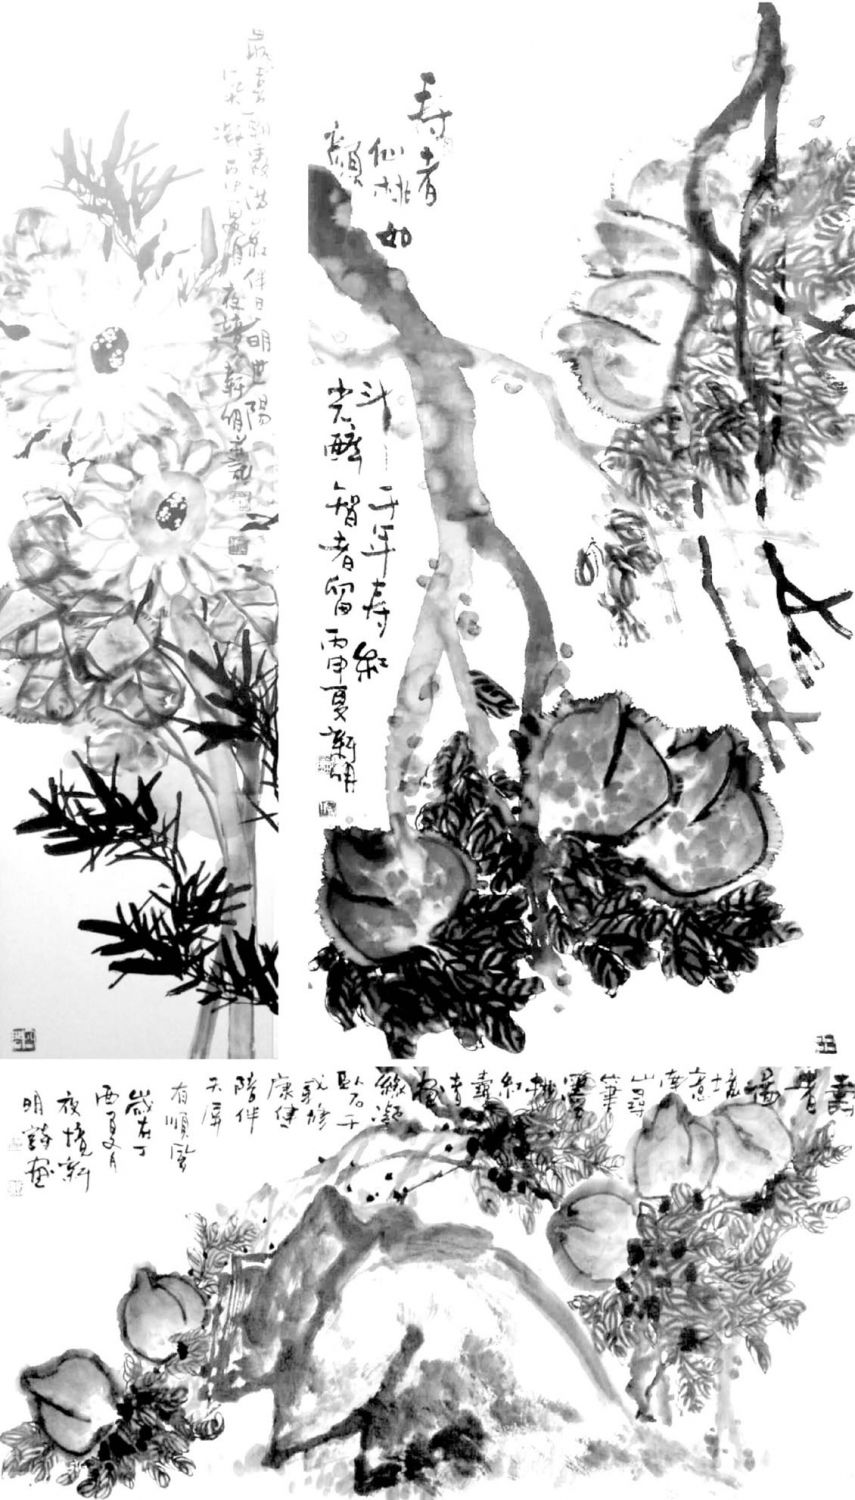 图6 2017北京画展部分展品